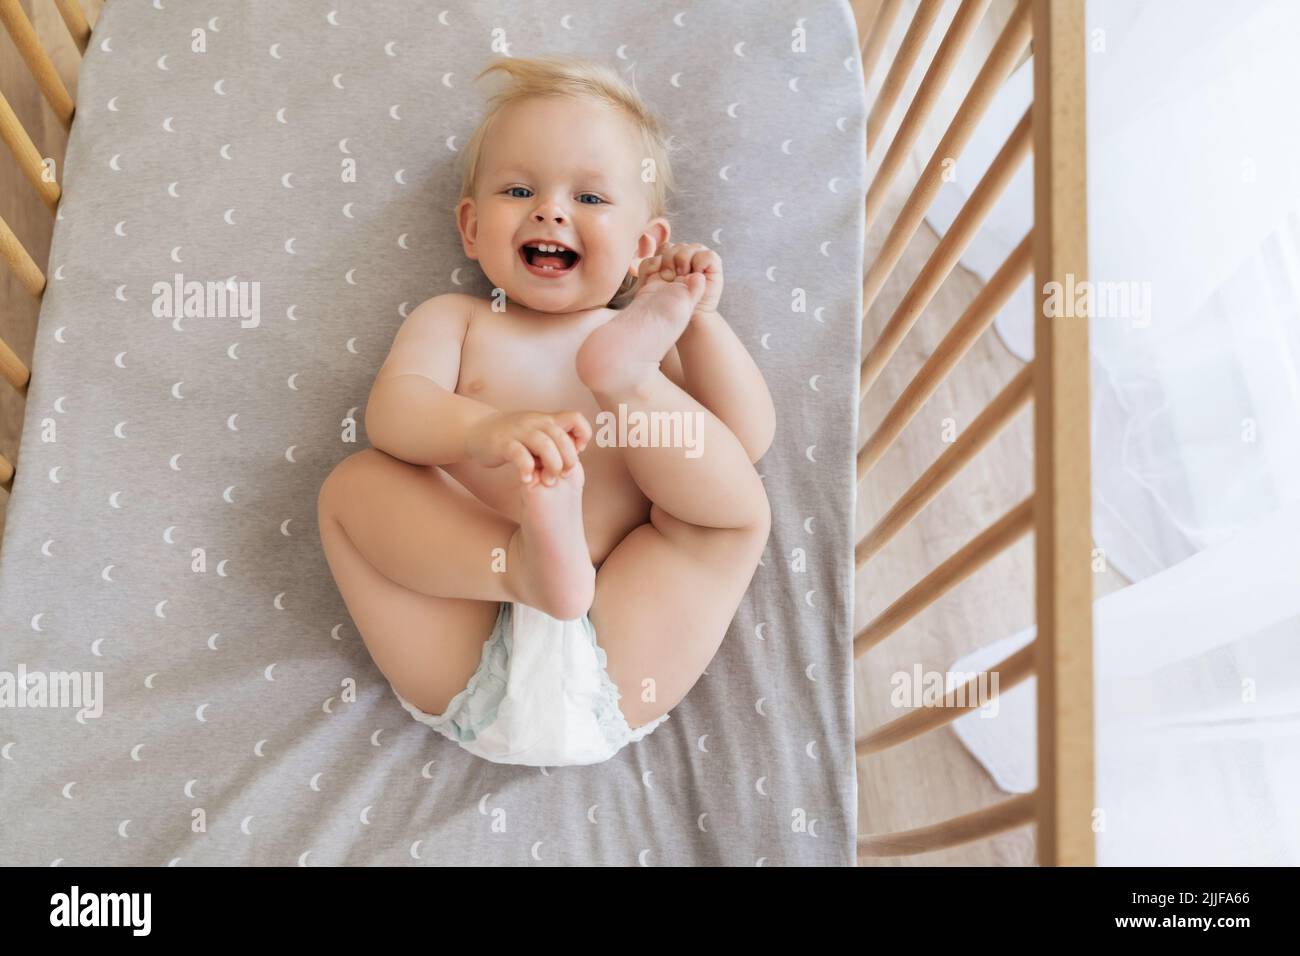 Vista superior retrato de feliz divertido juguetón lindo bebé en pañal acostado en su espalda jugando con los pies, divirtiéndose riendo de la cámara en la cama sobre una hoja gris con estampado de media luna Foto de stock